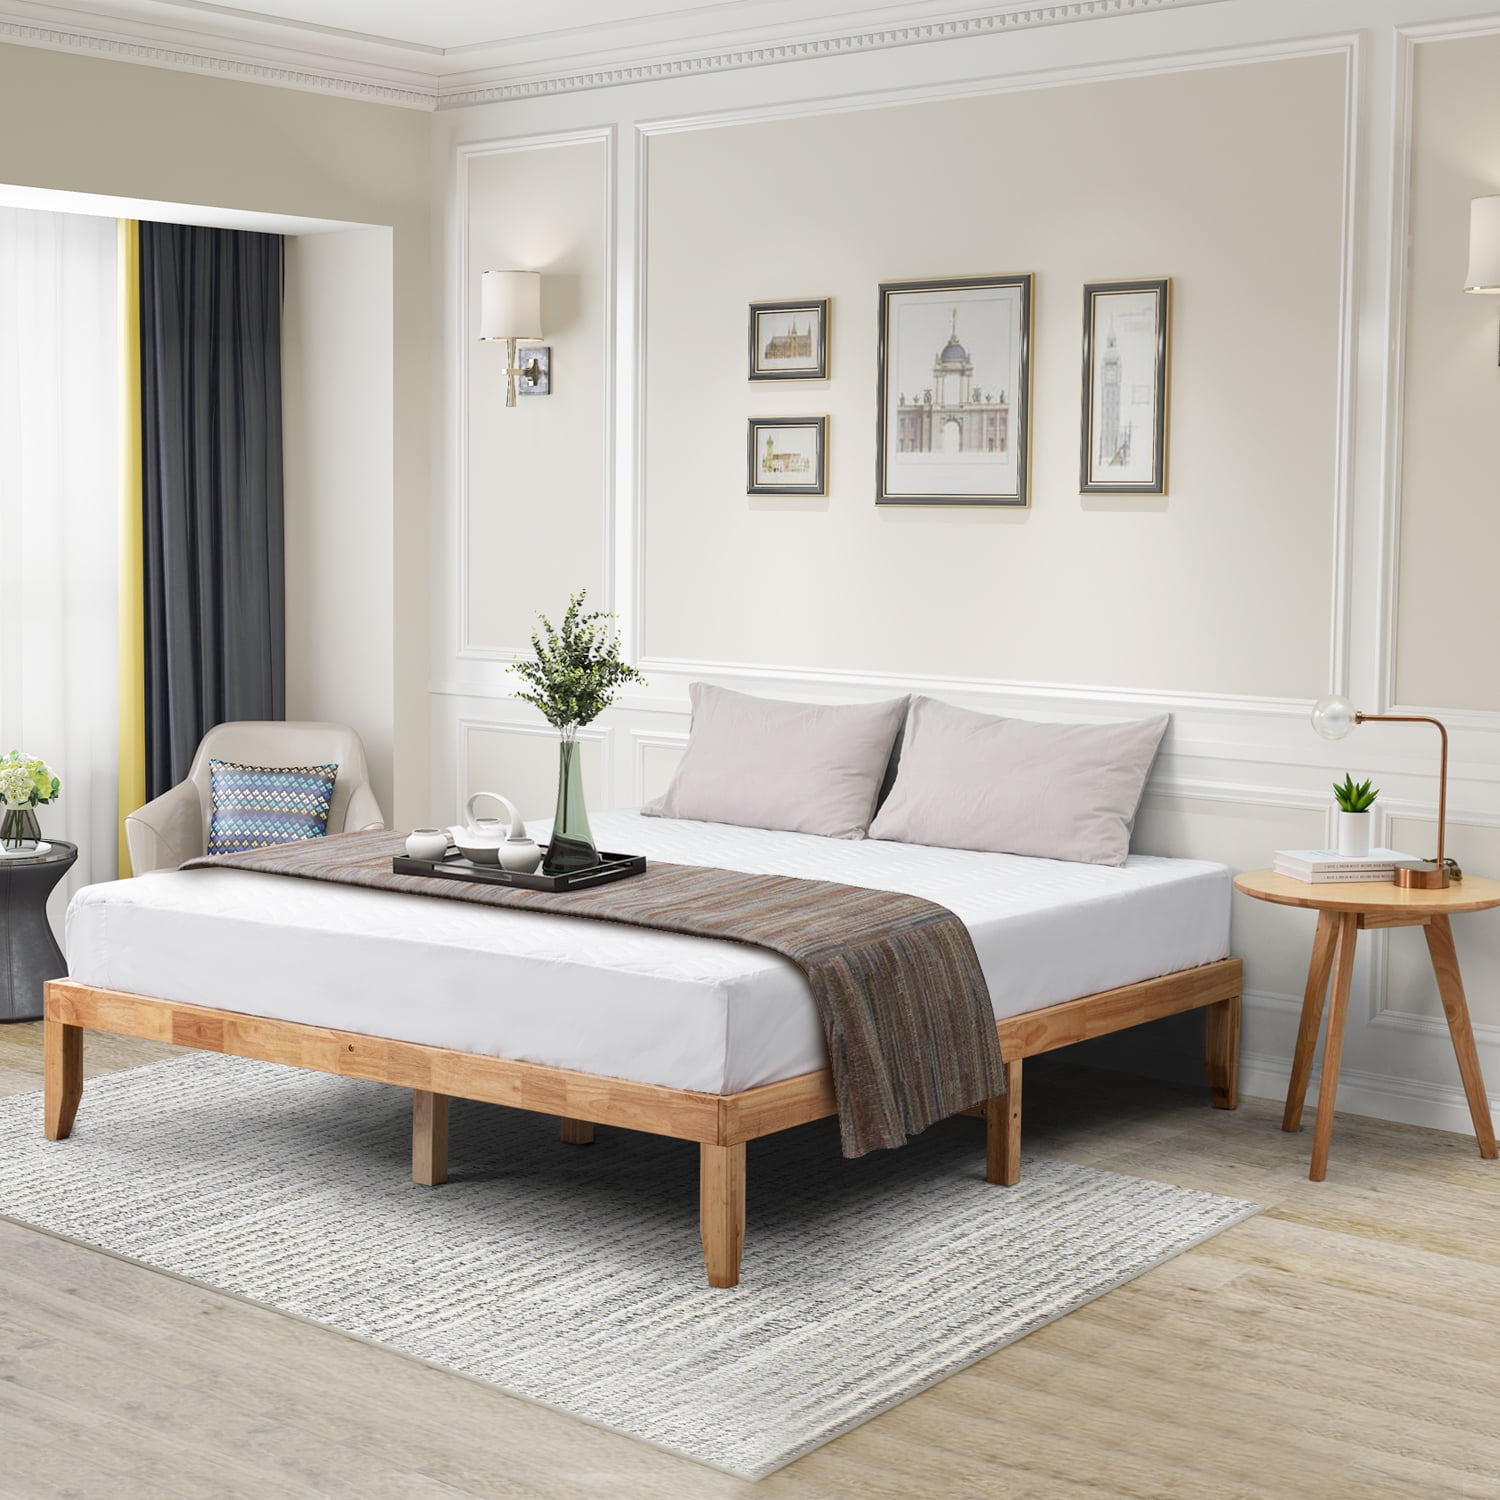 Bed Frame With Natural Wooden Slats, Wooden Slats For King Size Bed Frame